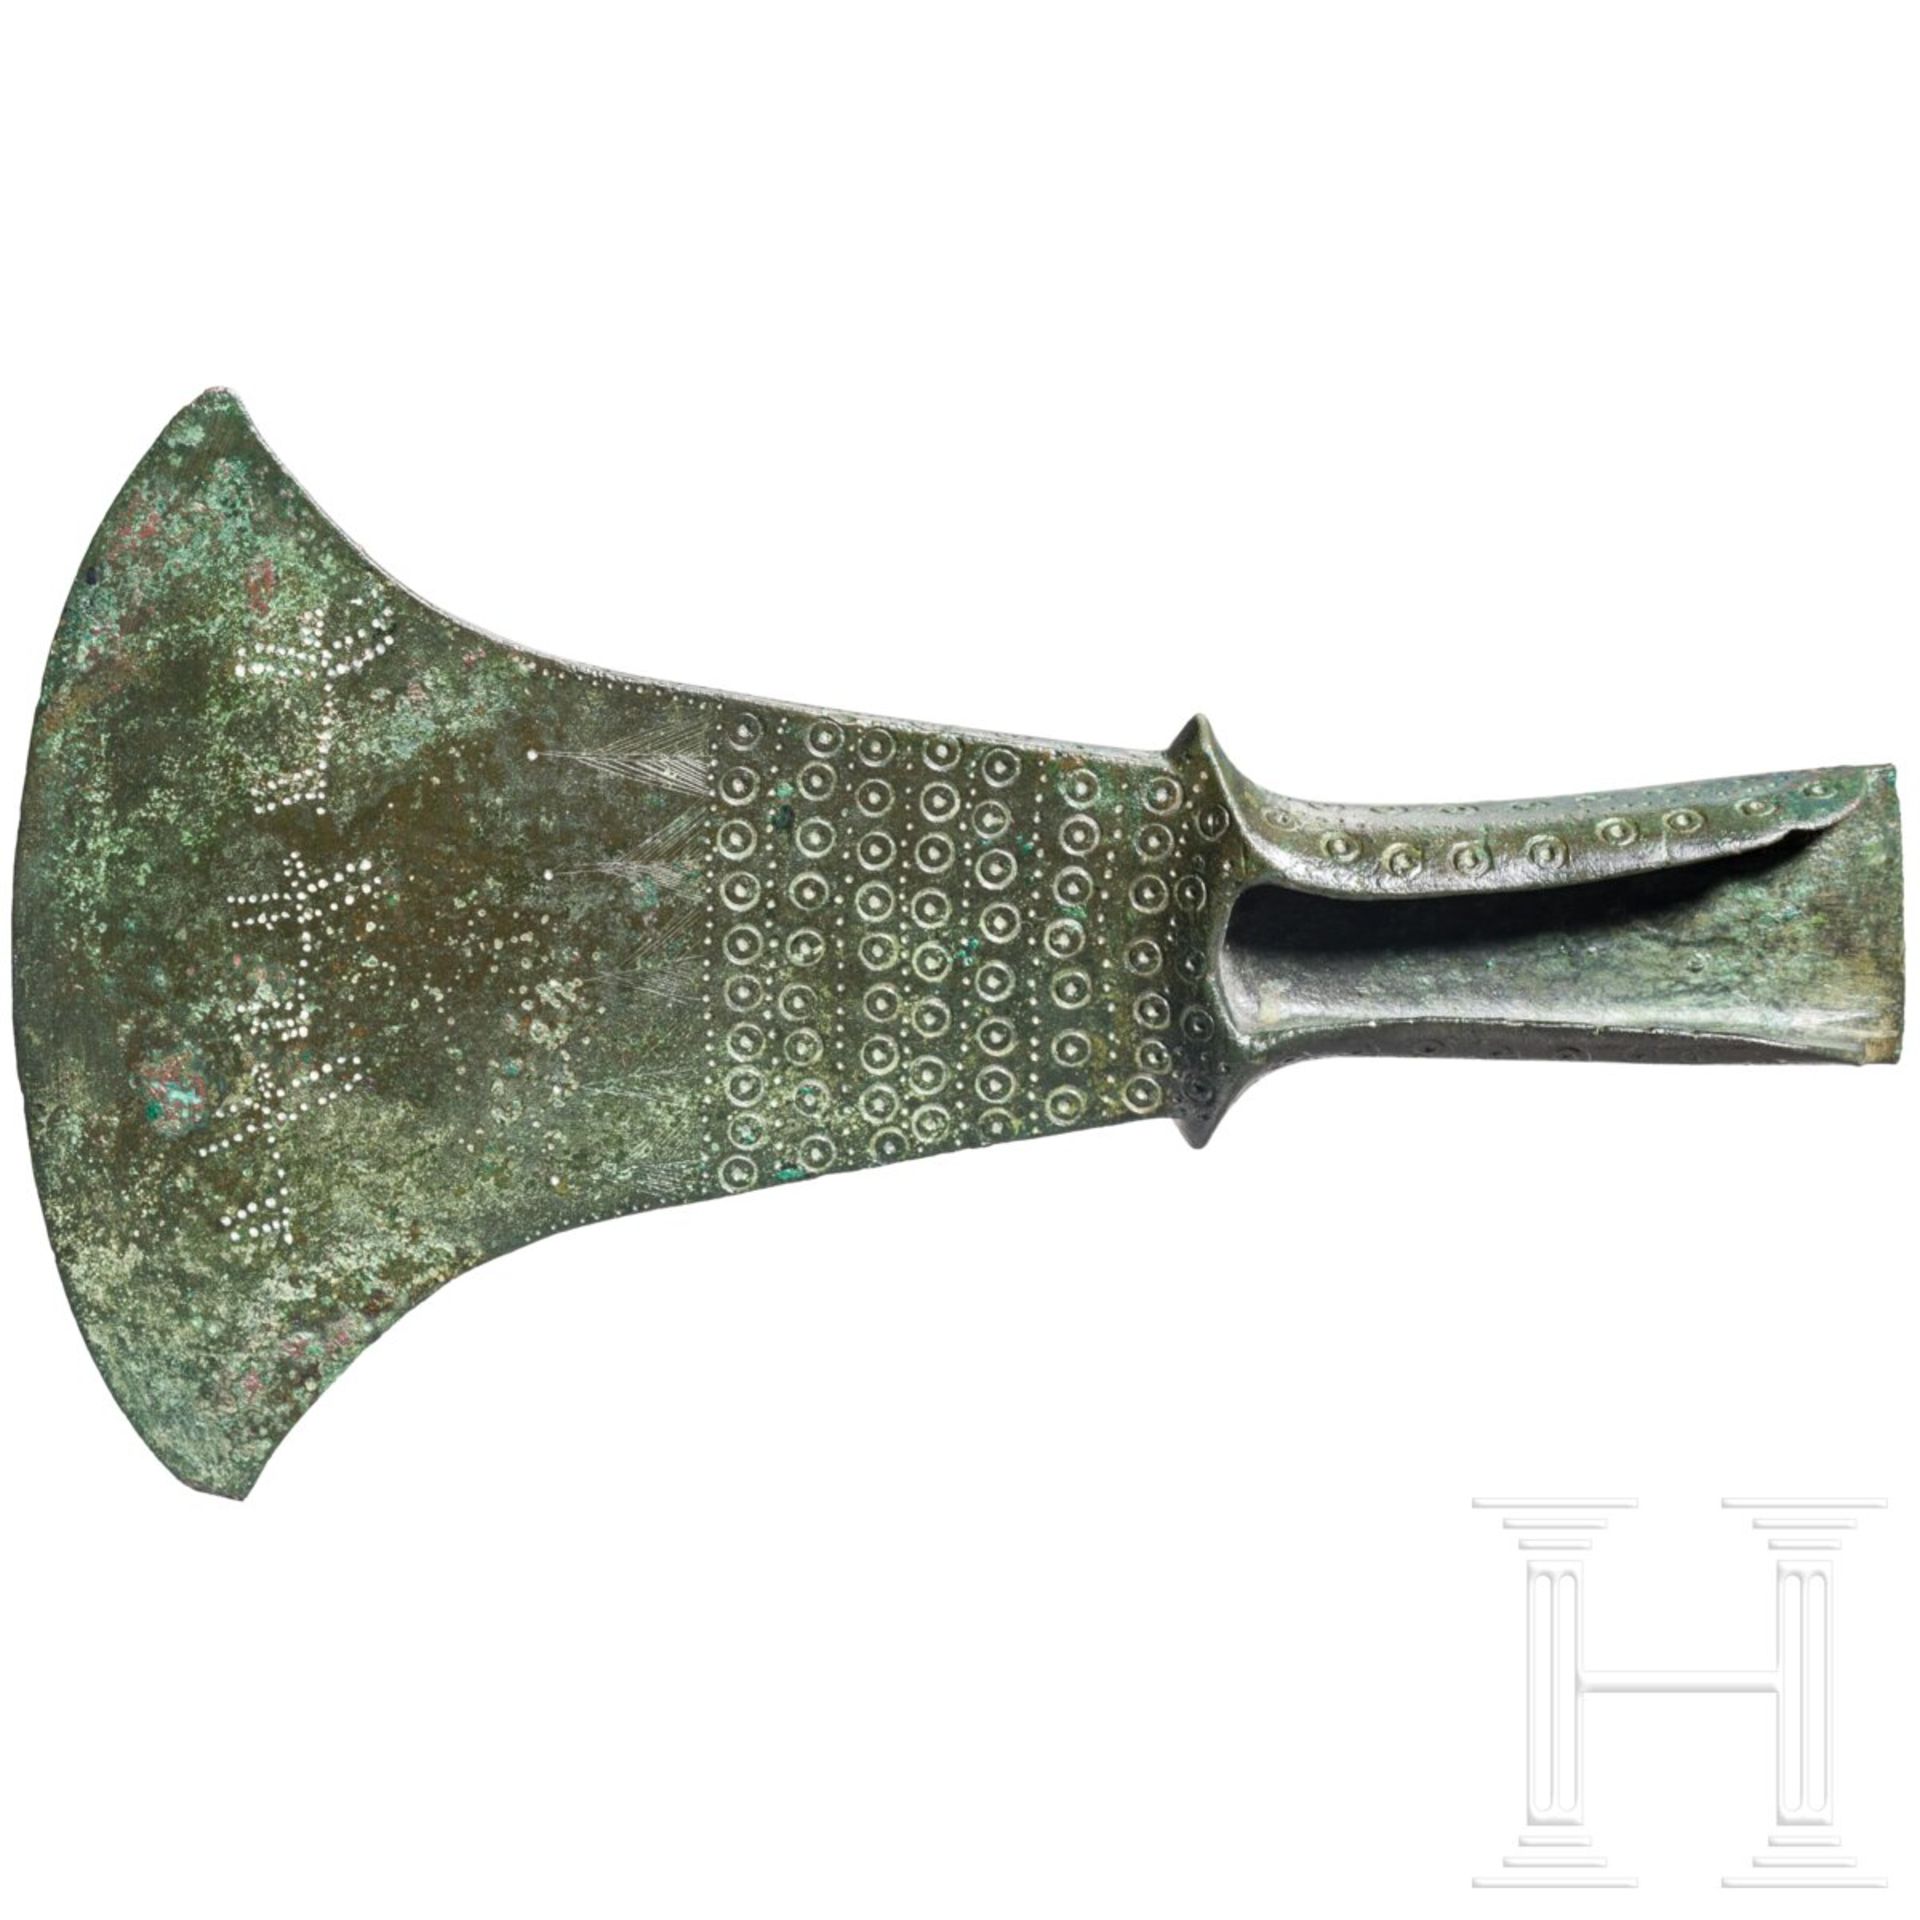 Bronzebeil für zeremonielle Zwecke, etruskisch, 2. Hälfte 8. - frühes 7. Jhdt. v. Chr. - Bild 2 aus 7